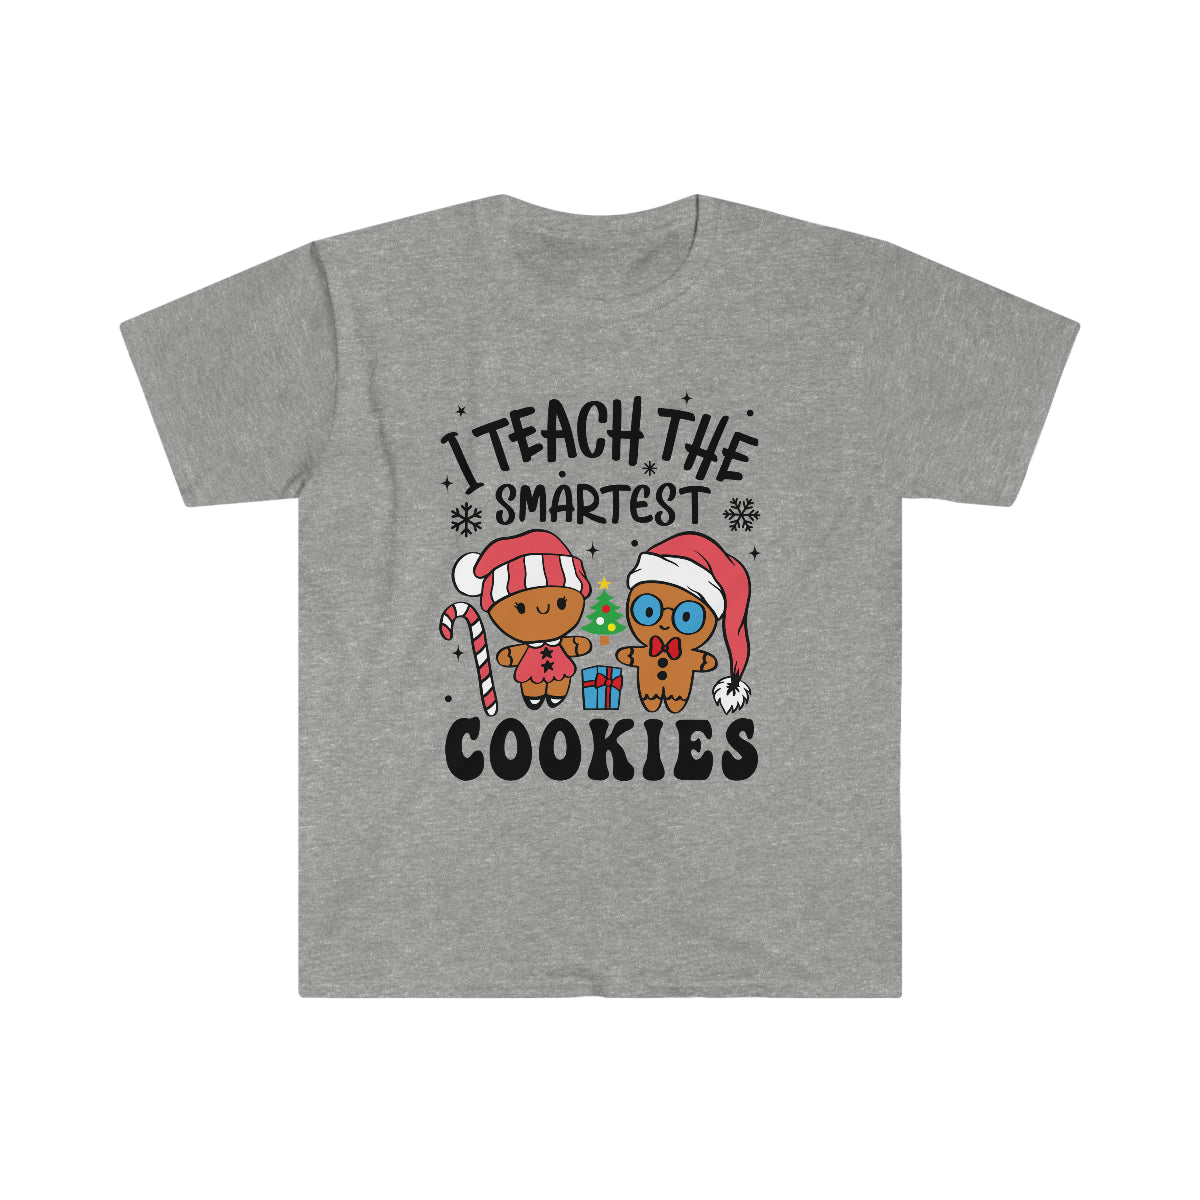 I Teach The Smartest Cookies - Teacher Christmas Tee - Unisex Softstyle T-Shirt